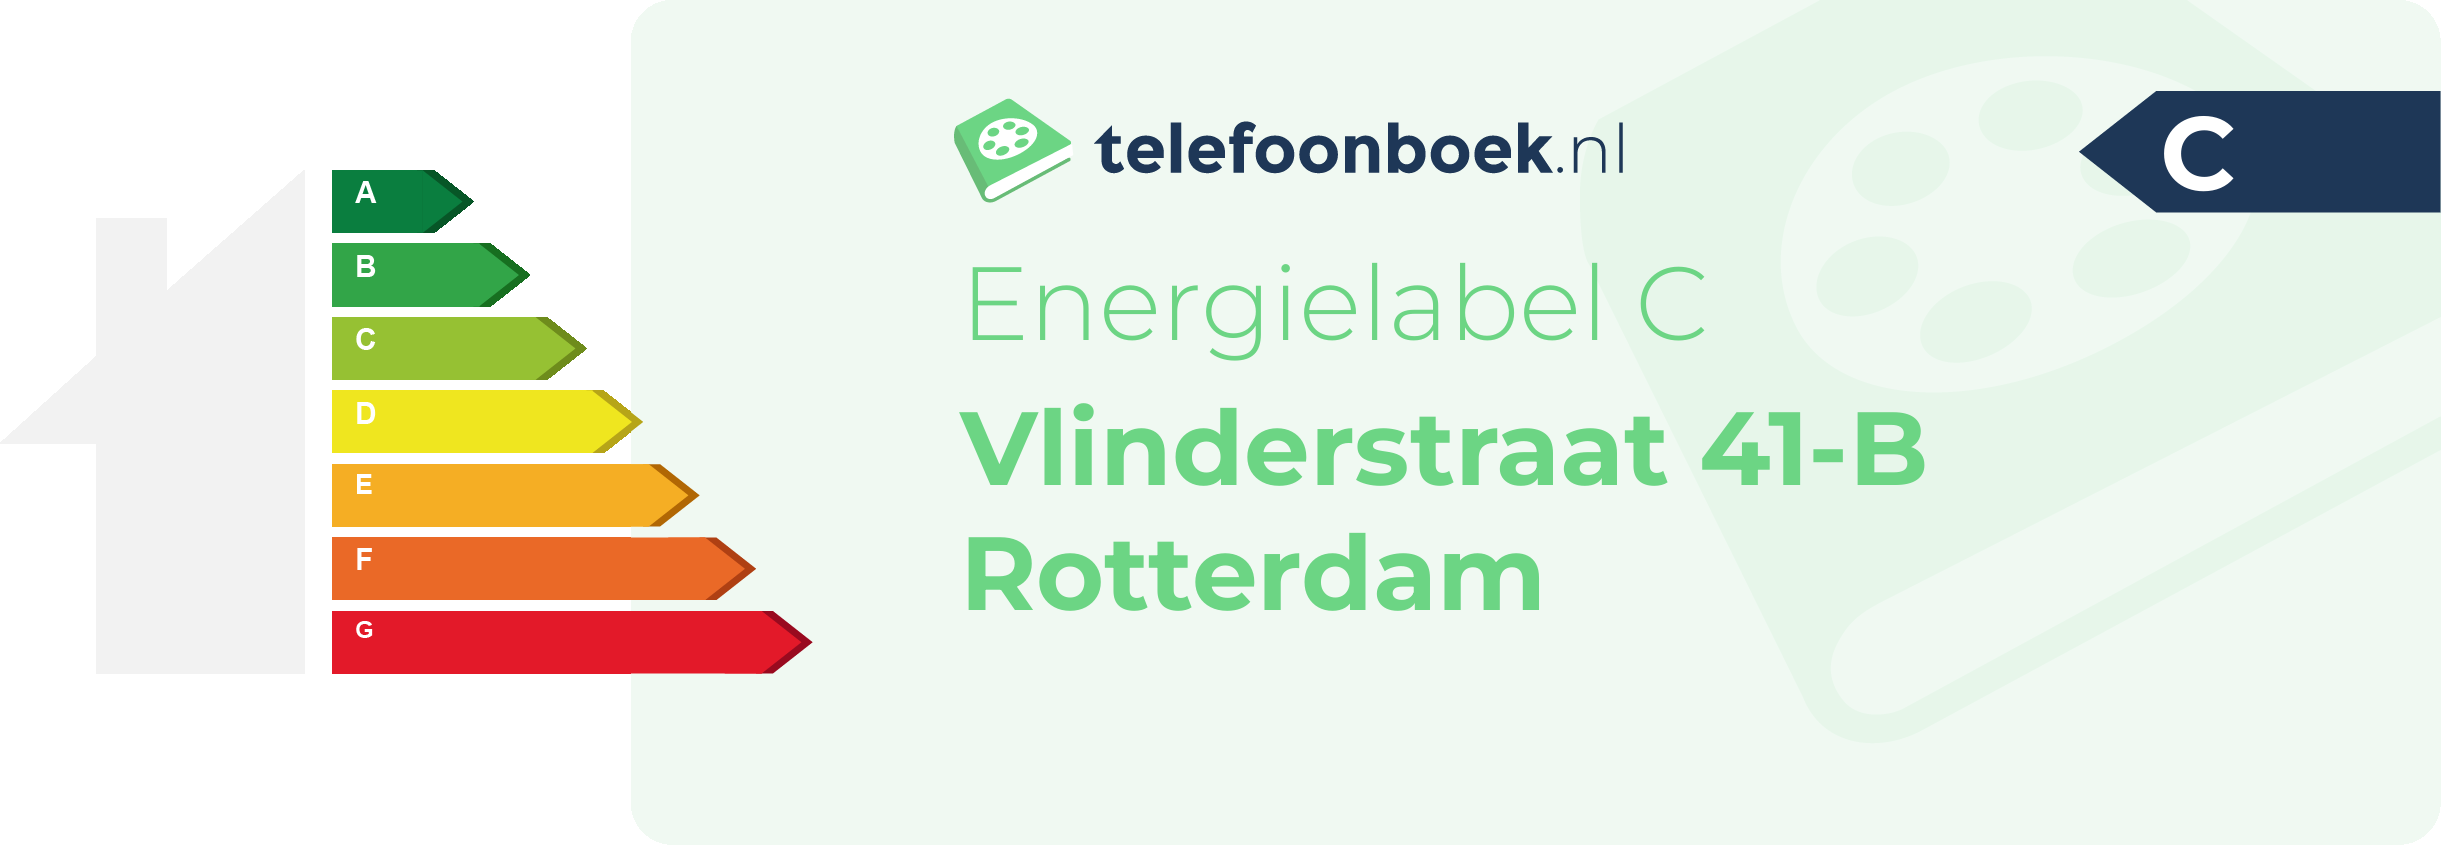 Energielabel Vlinderstraat 41-B Rotterdam